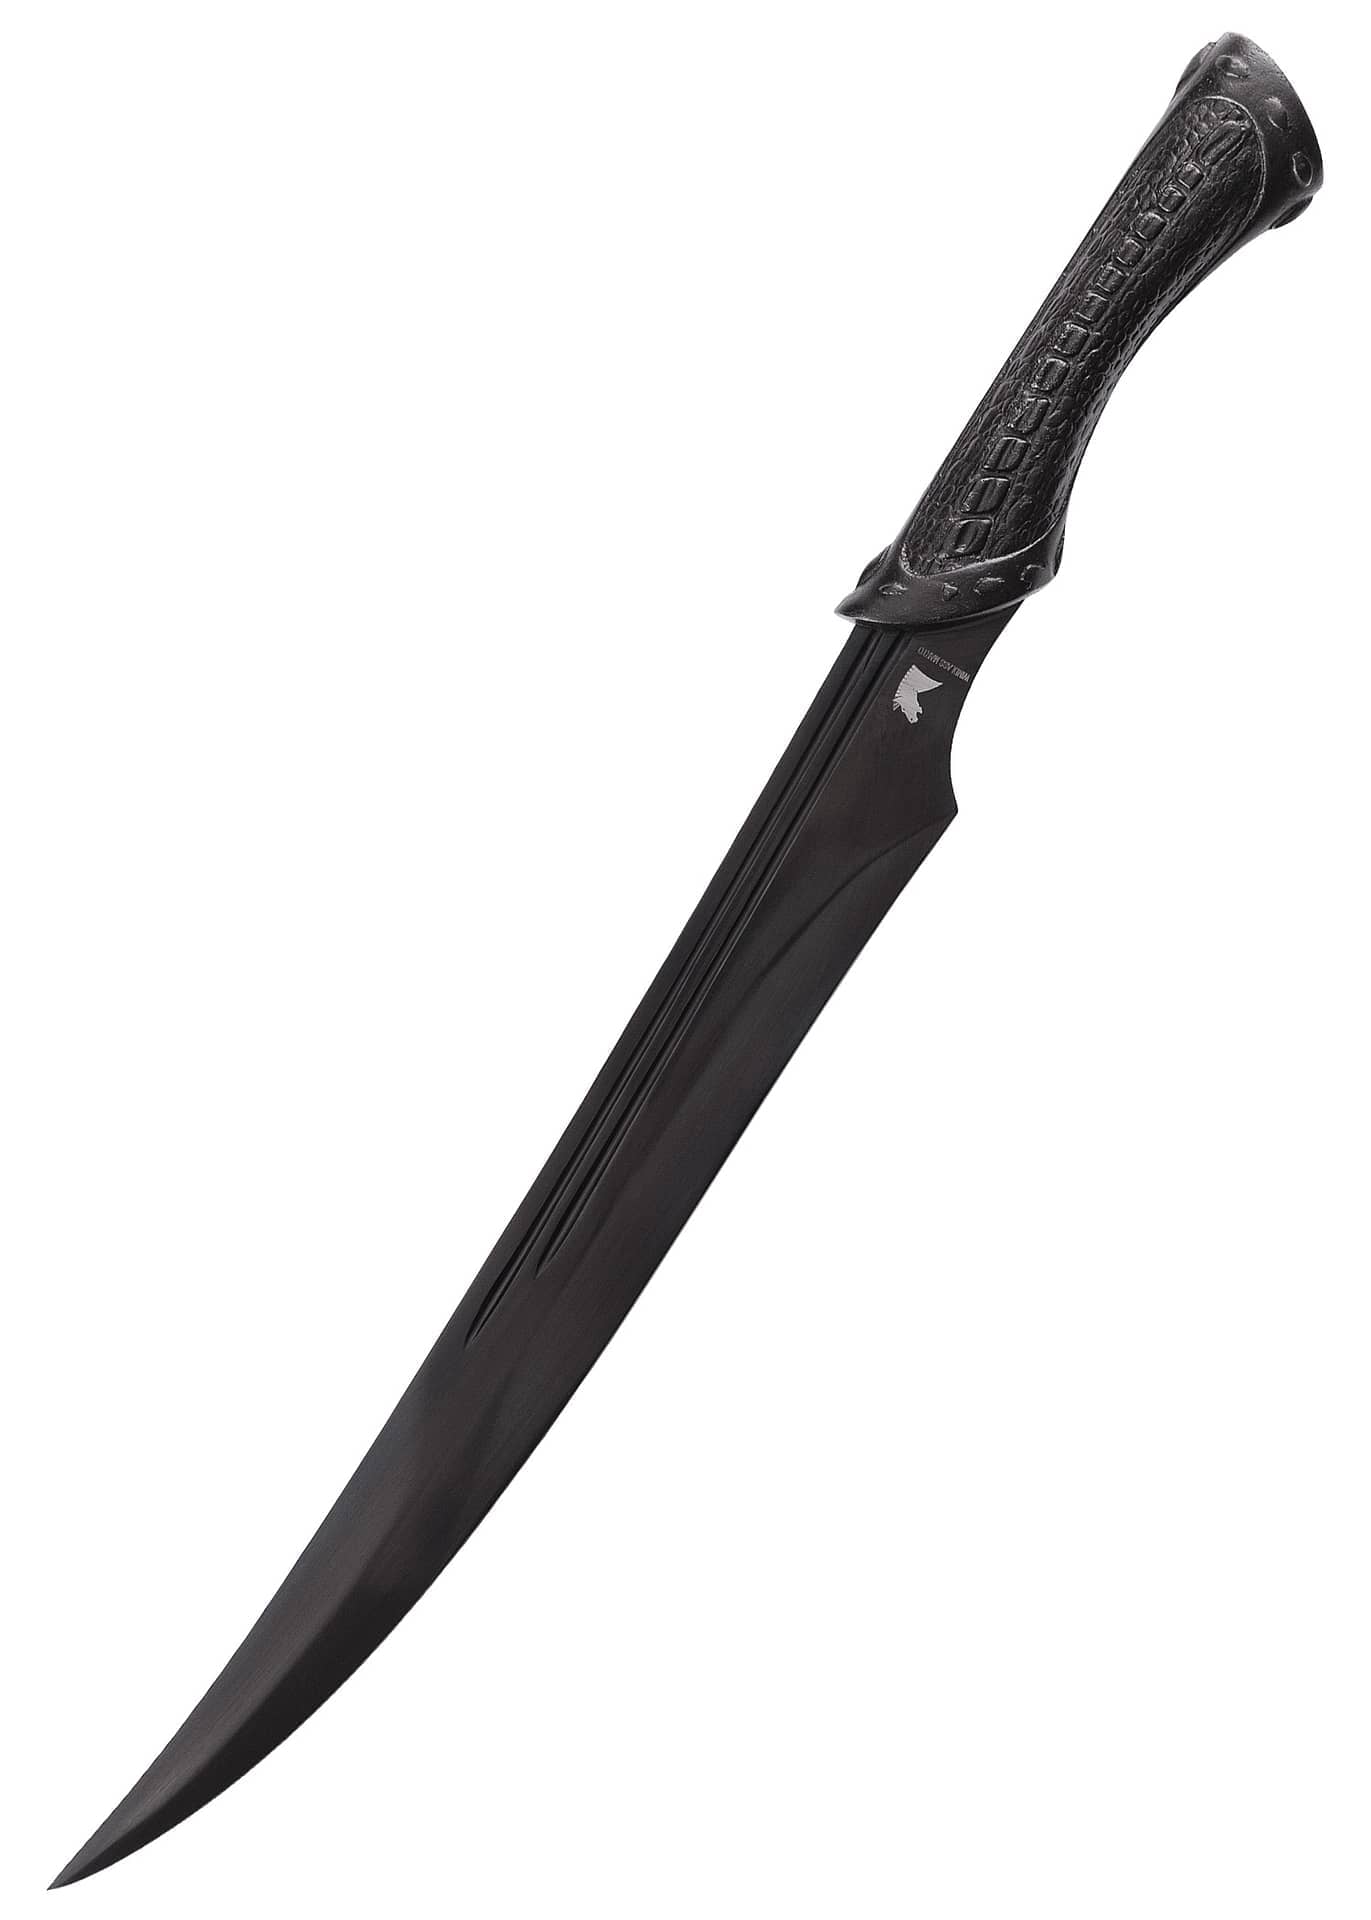 Cuchillo Muela outdoor 55-16 > Espadas y mas